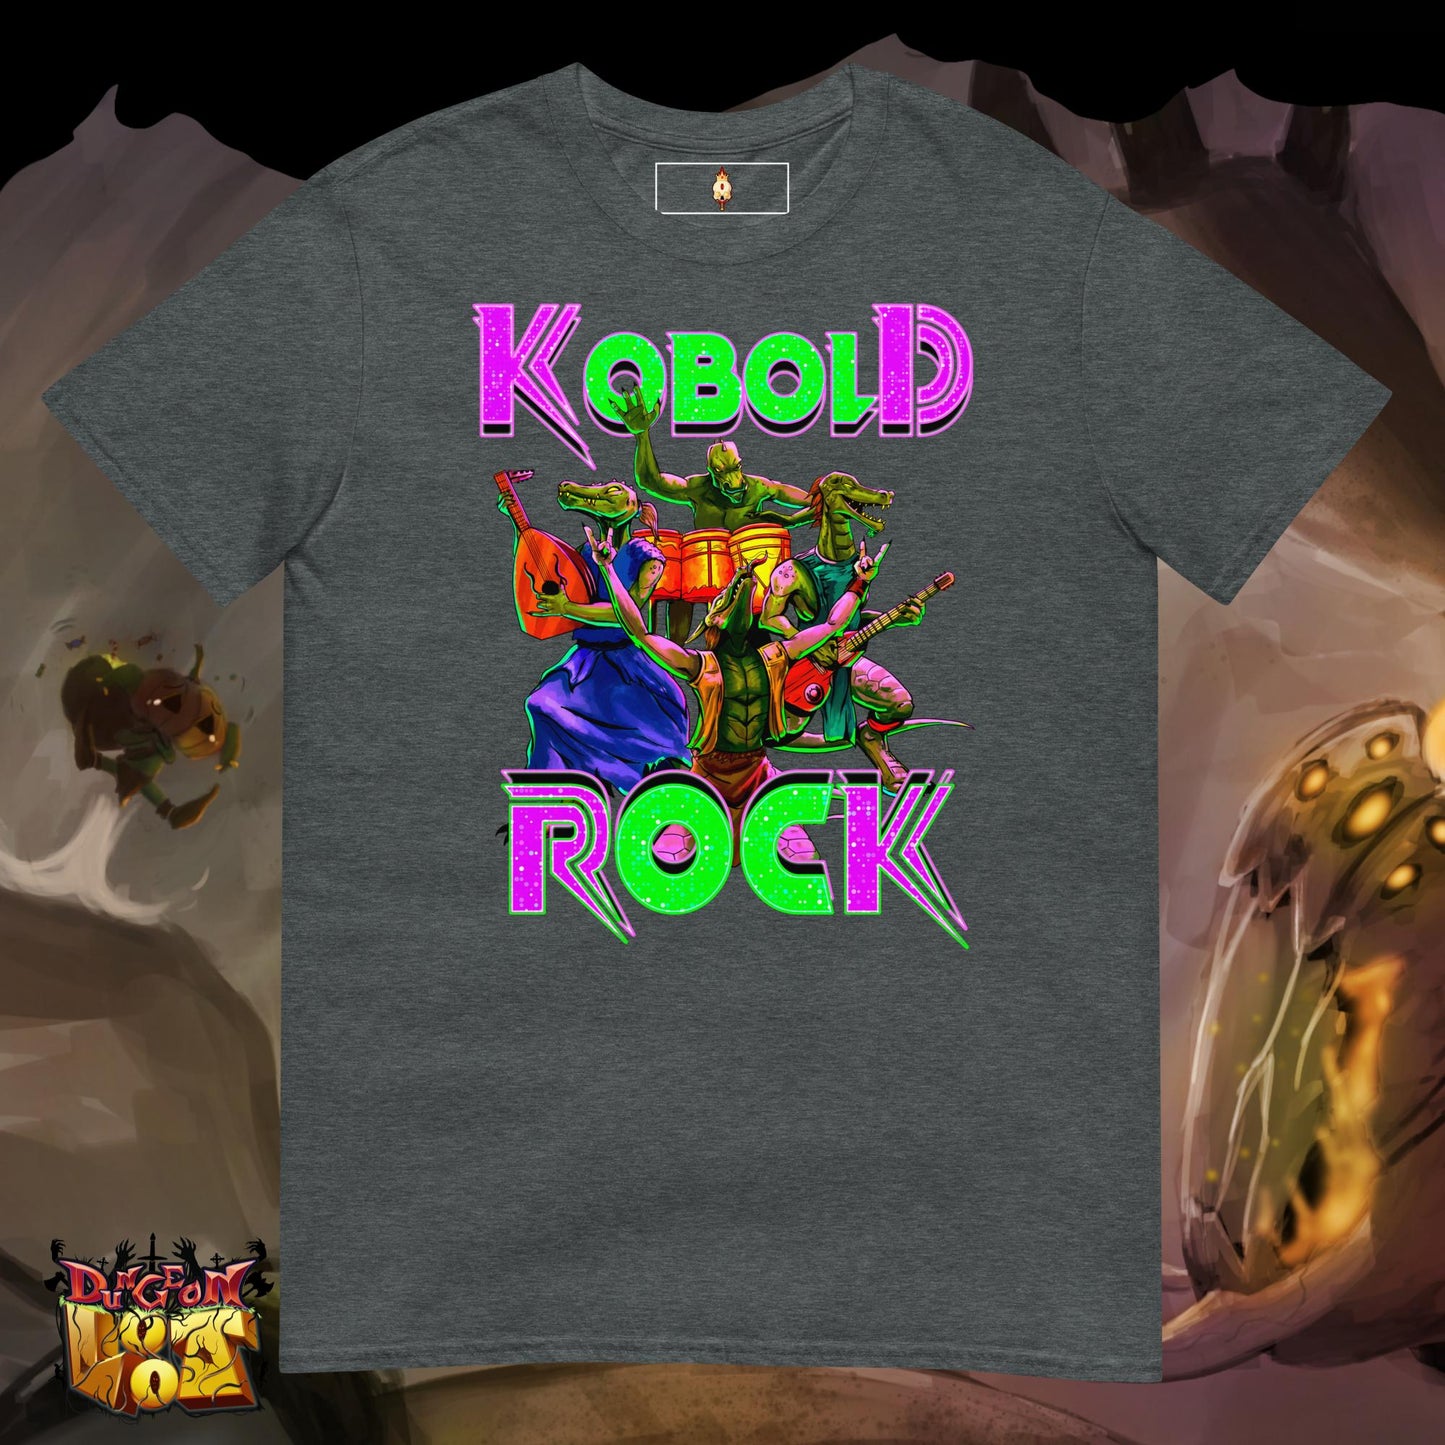 Kobold Rock (green text) - Short-Sleeve Unisex T-Shirt